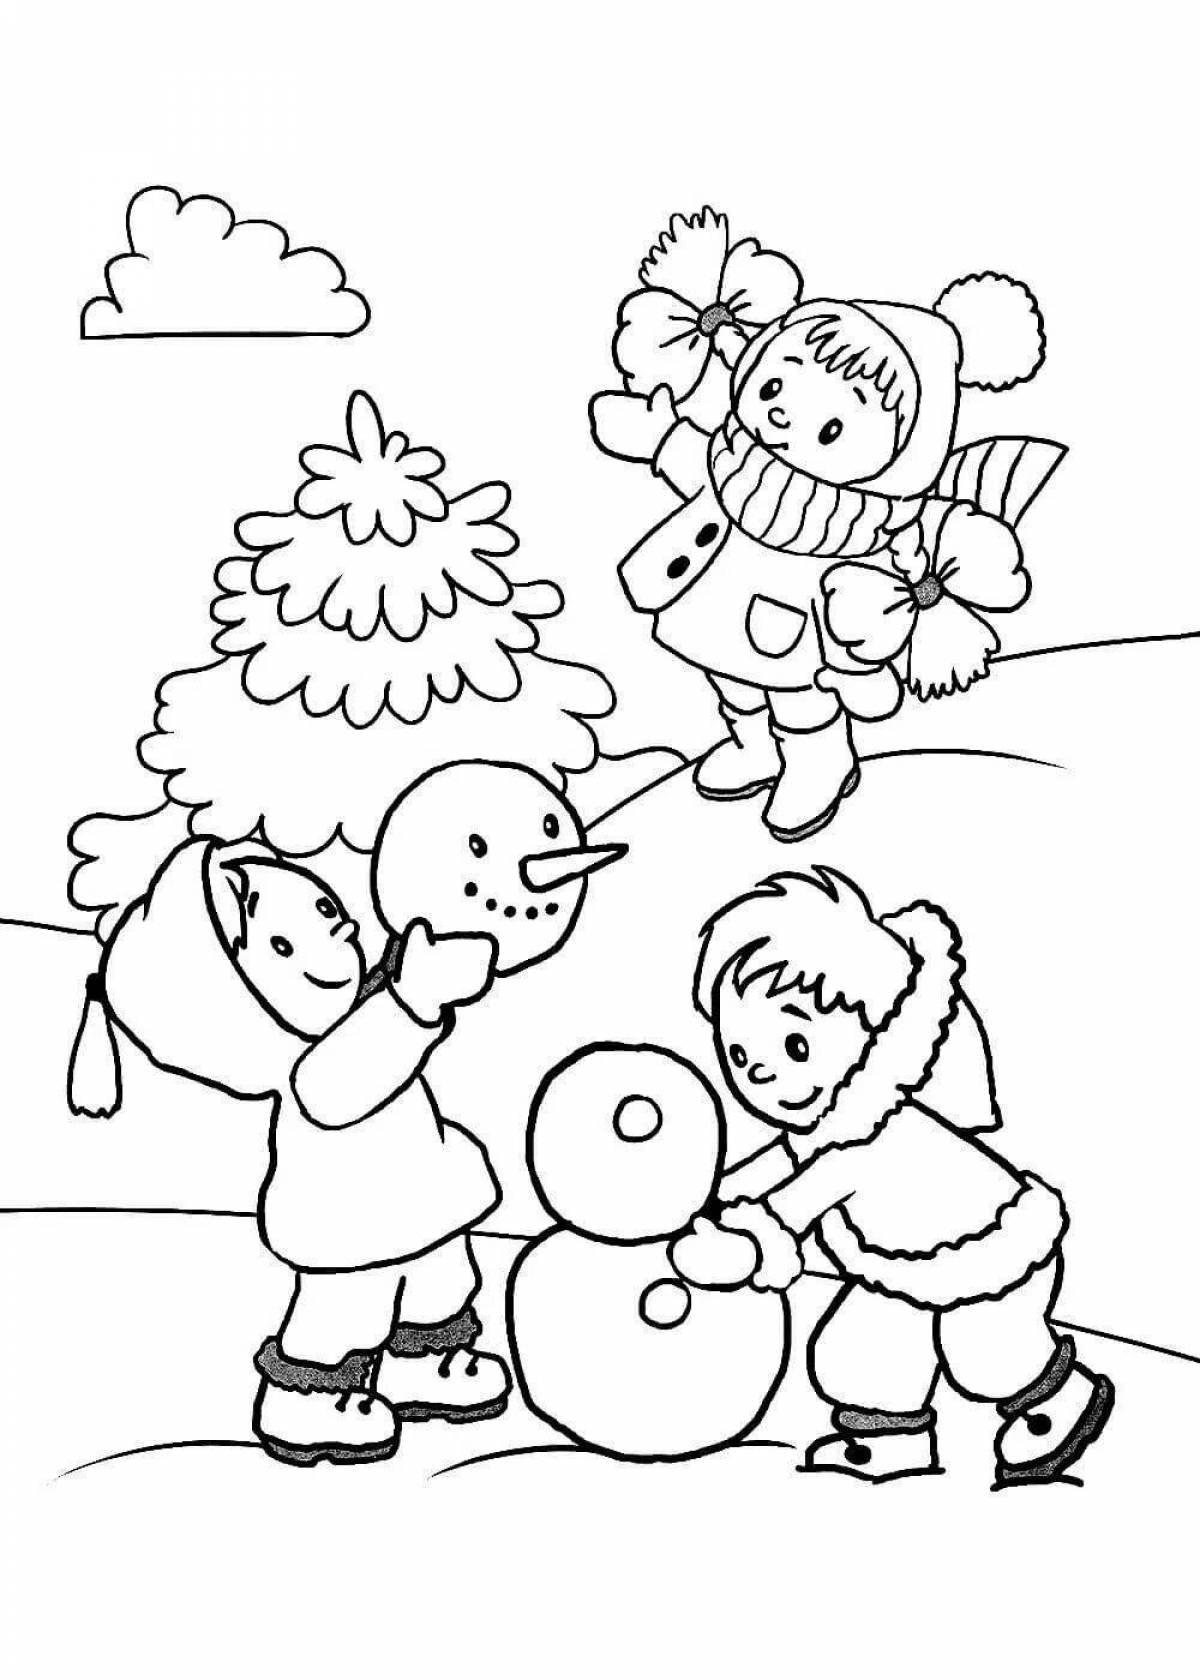 Drawing drawing of winter fun